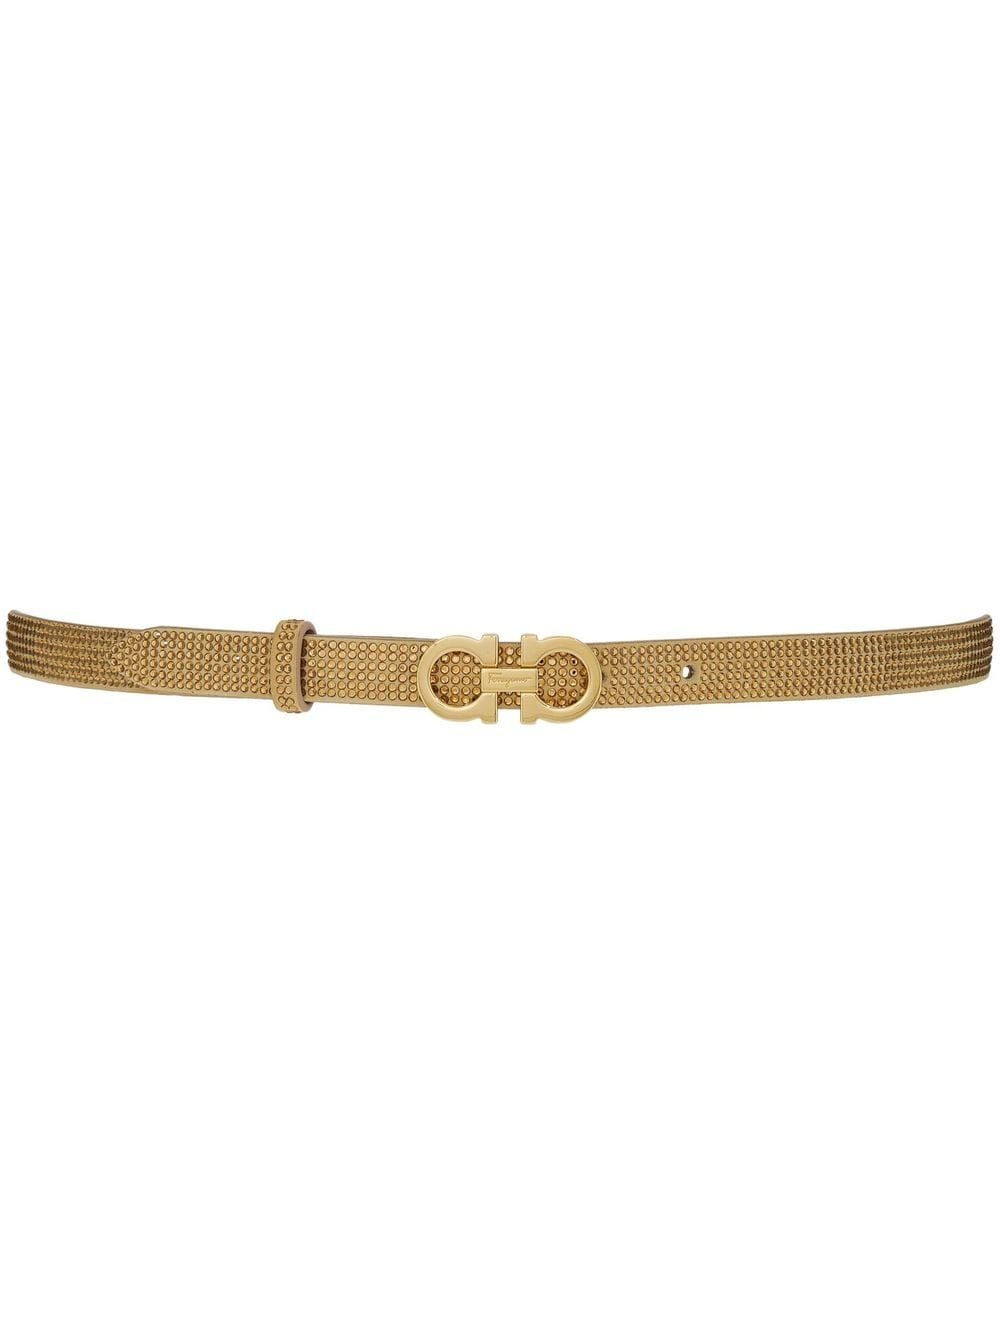 Ferragamo Gancini crystal-embellished adjustable belt - Neutrals